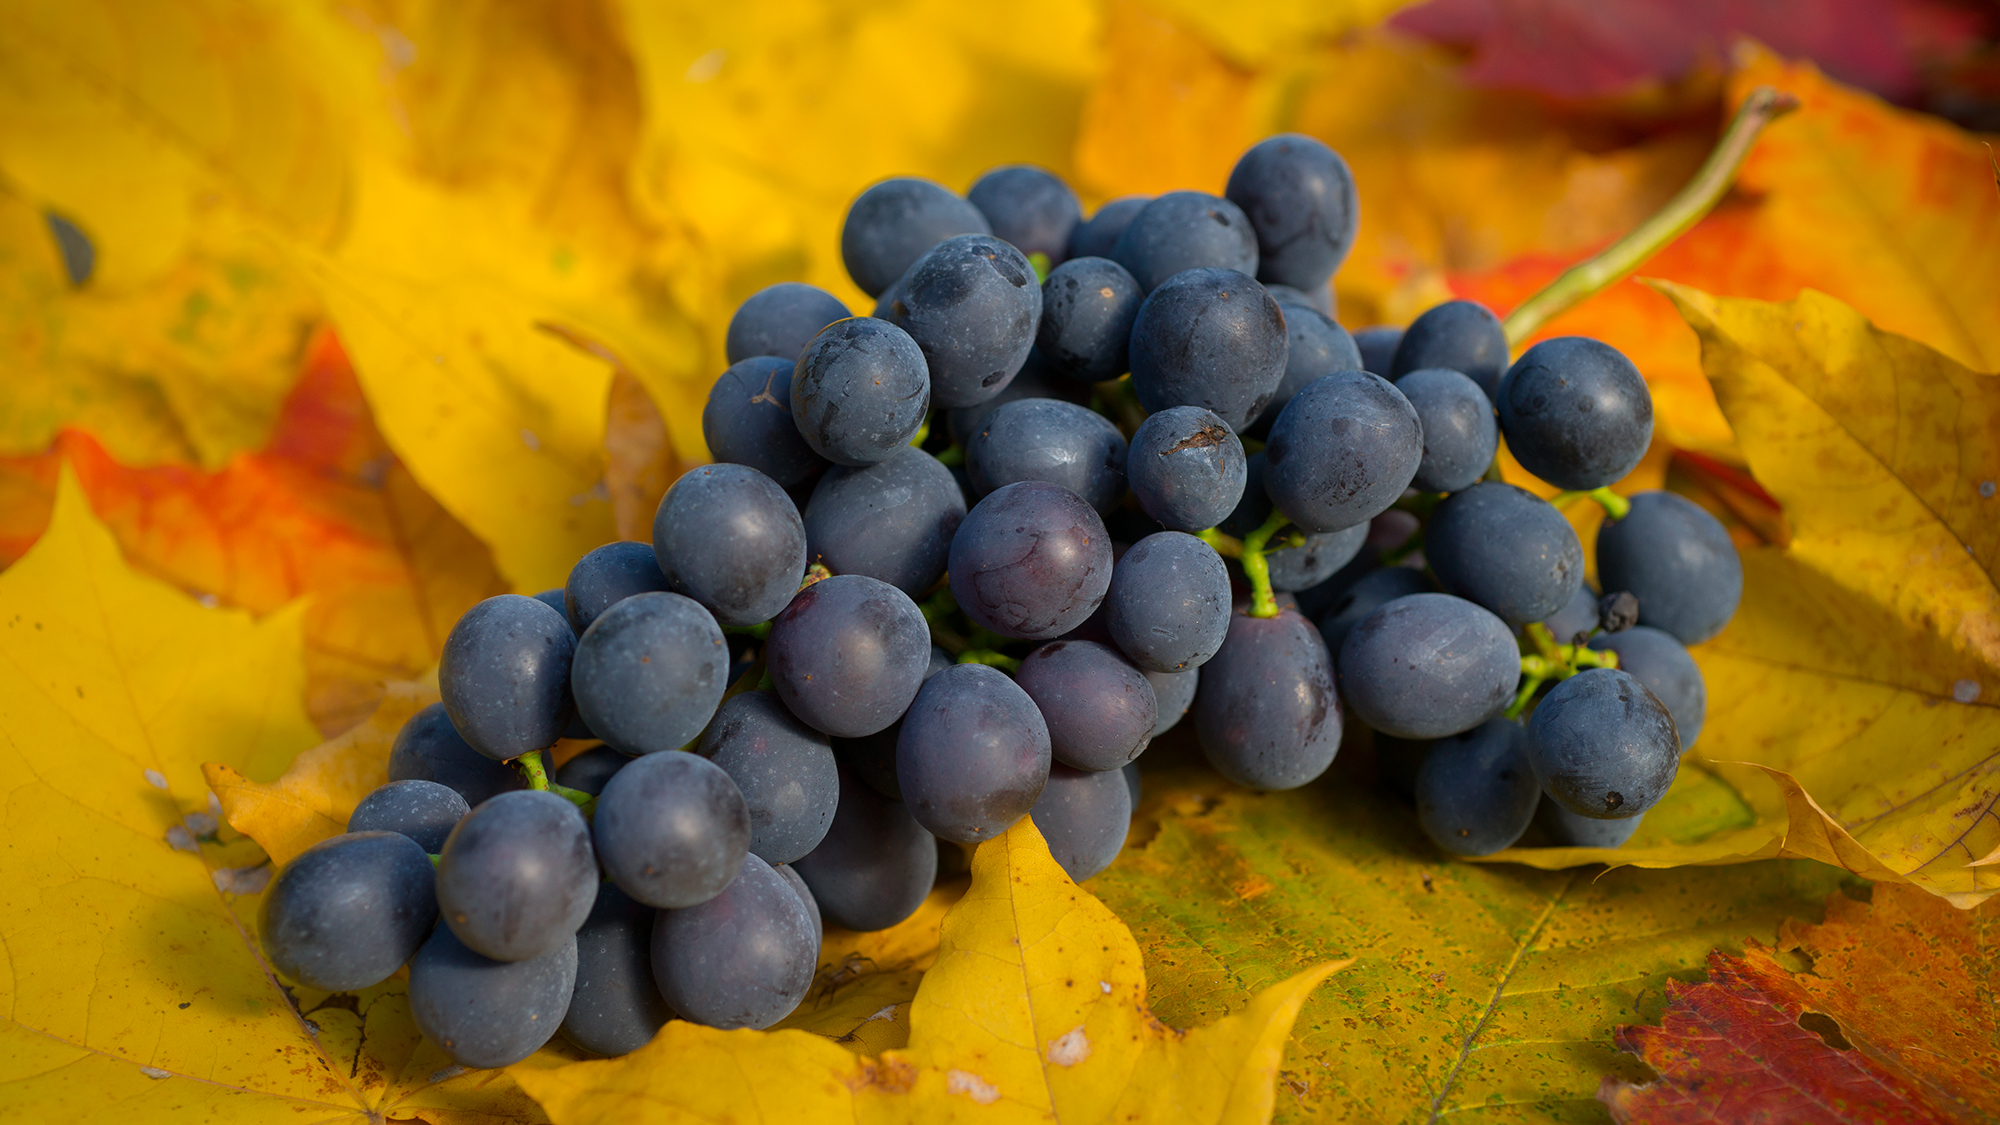 Donskoy Agate е ценен сорт грозде: родословие, характеристики и сравнение с други сортове